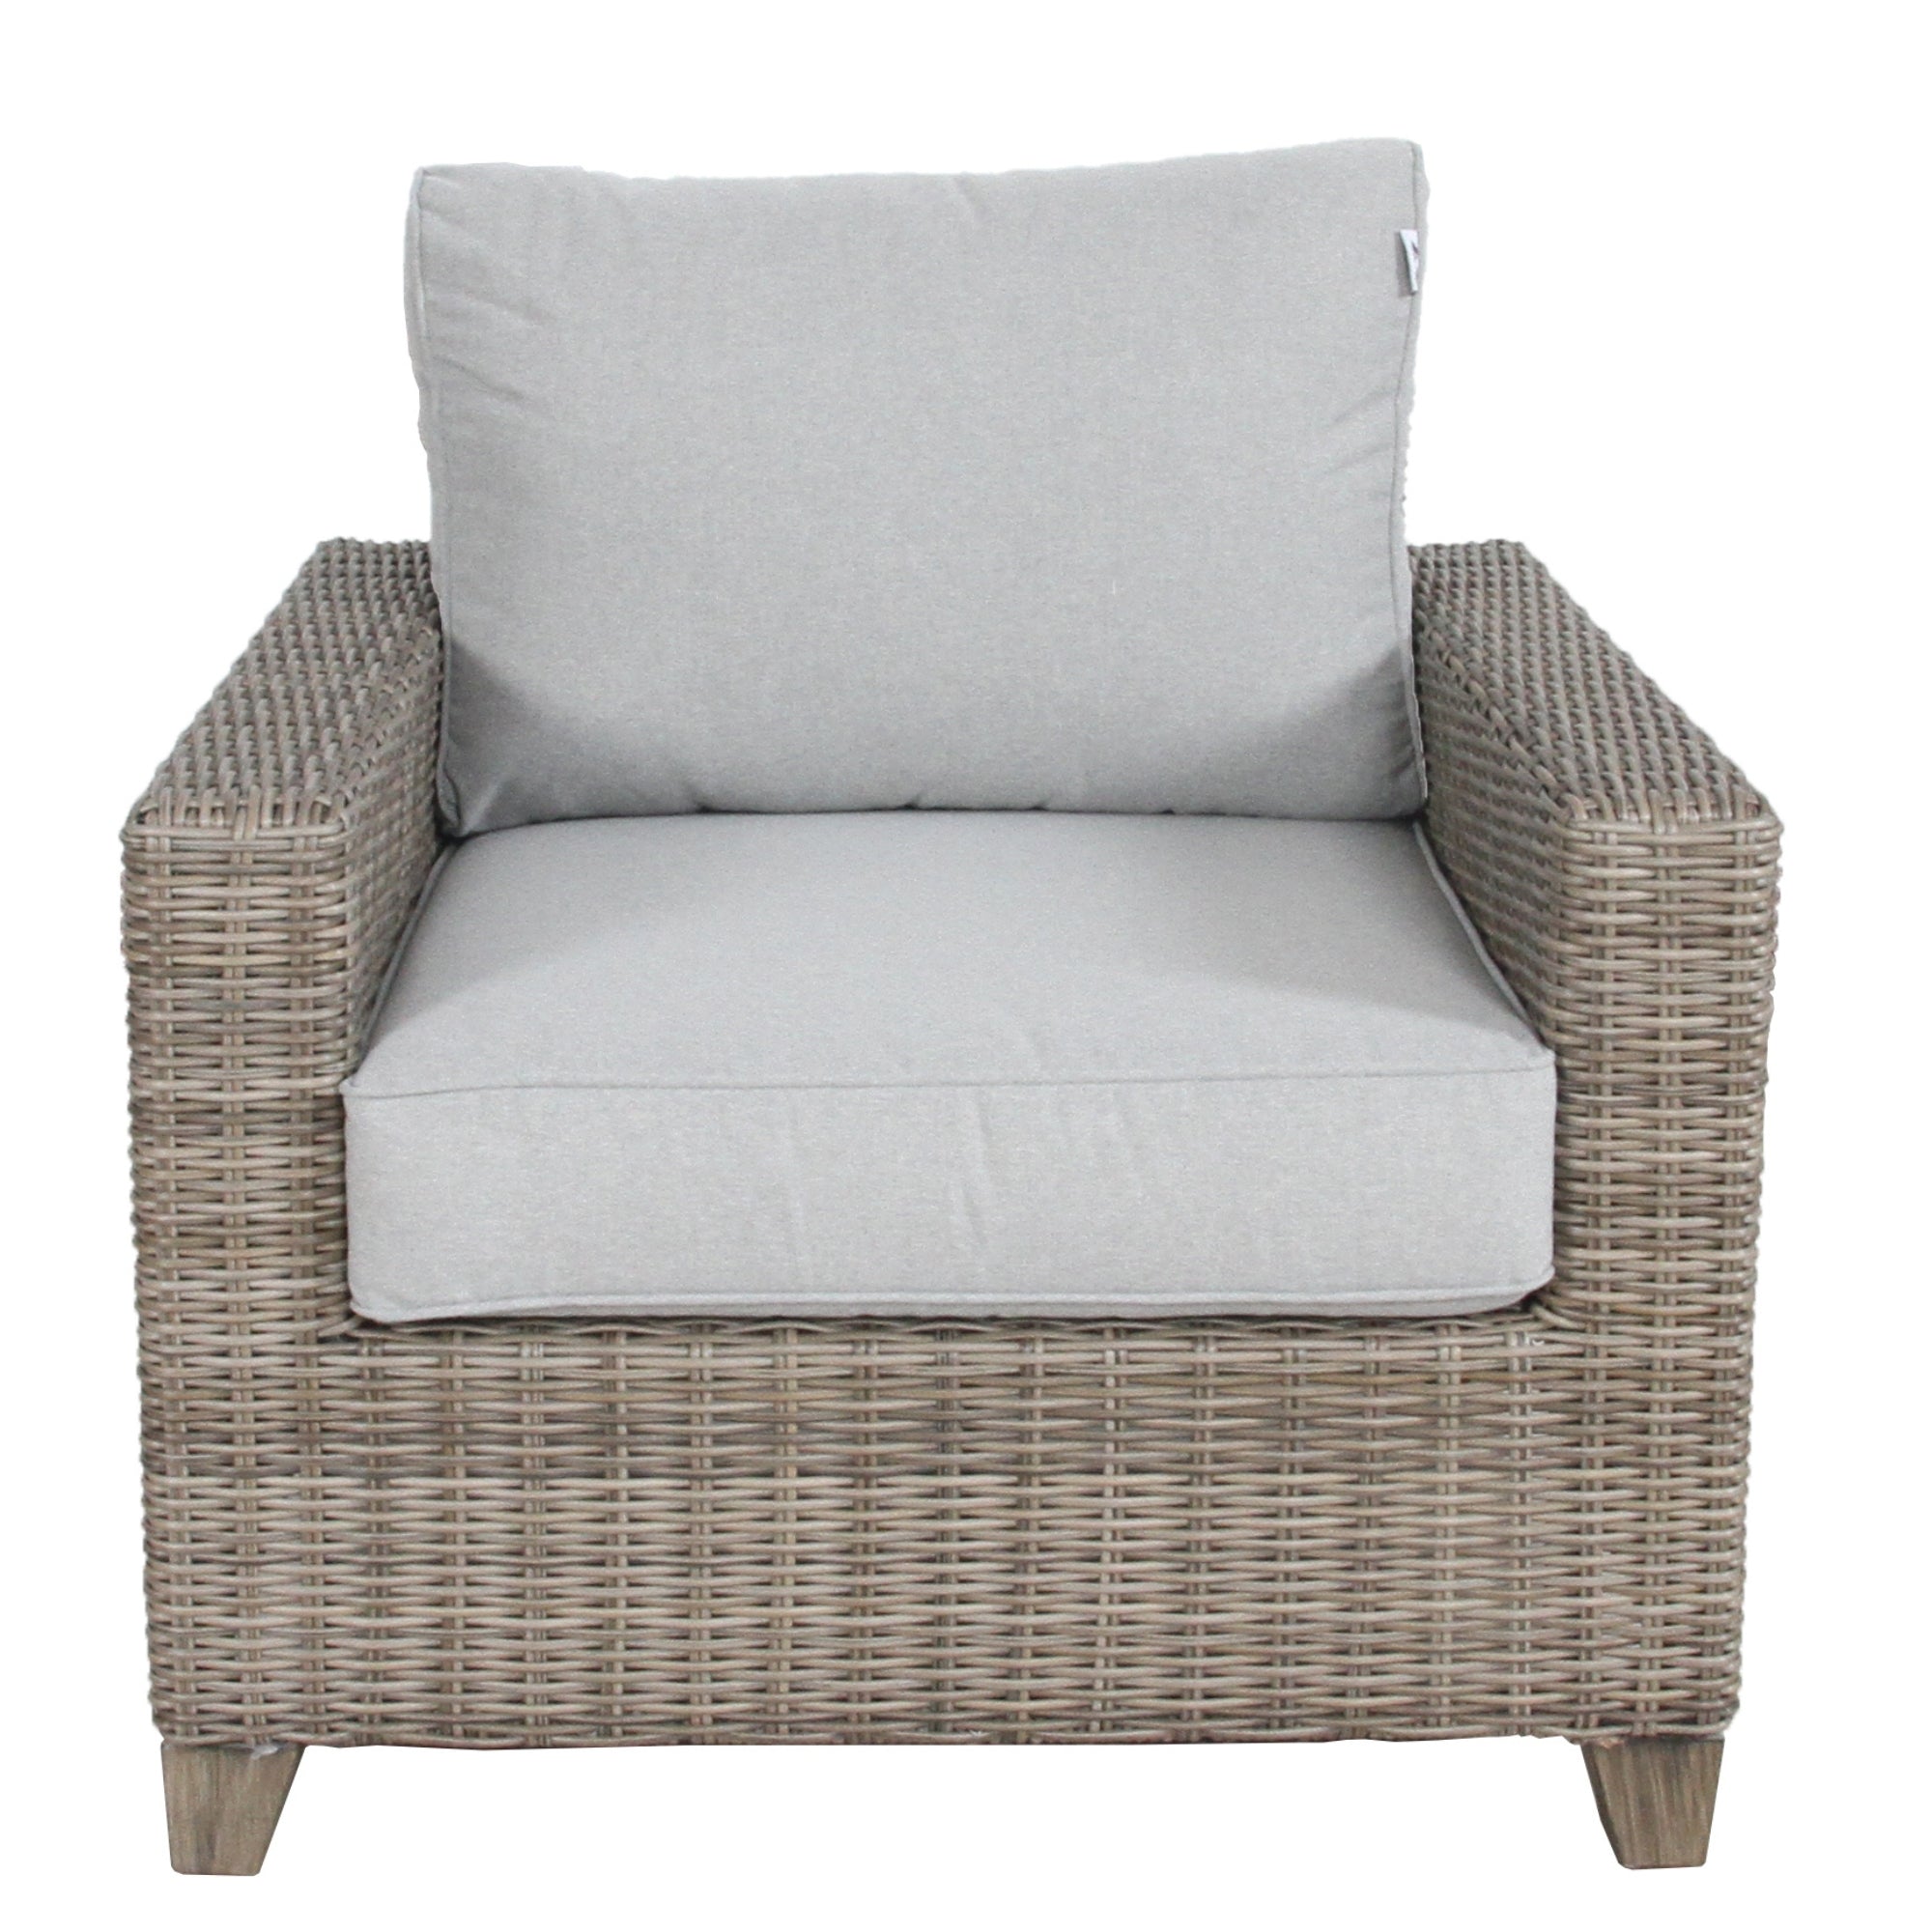 Weatherproof Wicker Rattan Outdoor Sofa Chair - 1 Seater